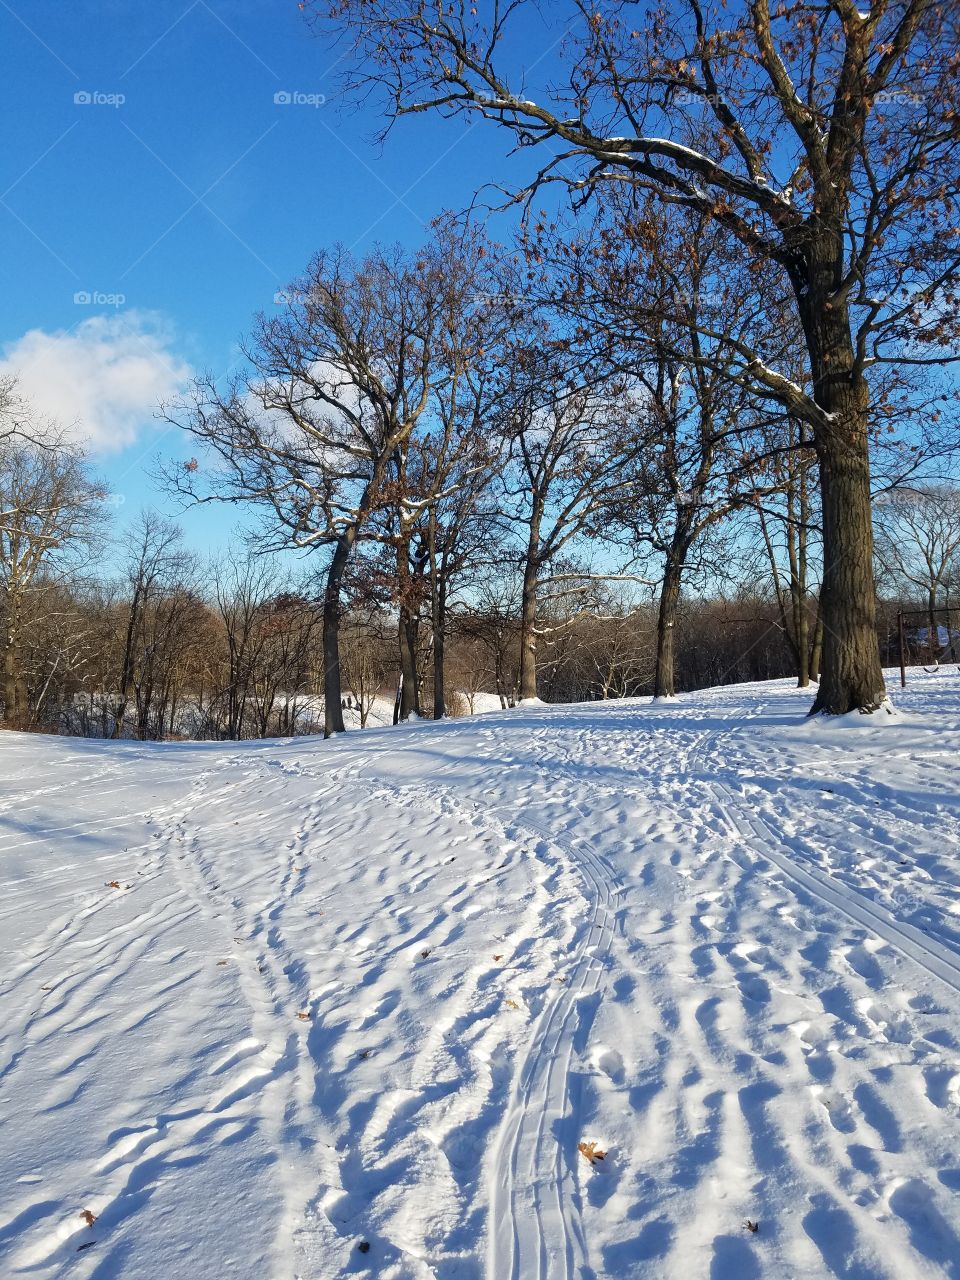 Winter Wonderland Park